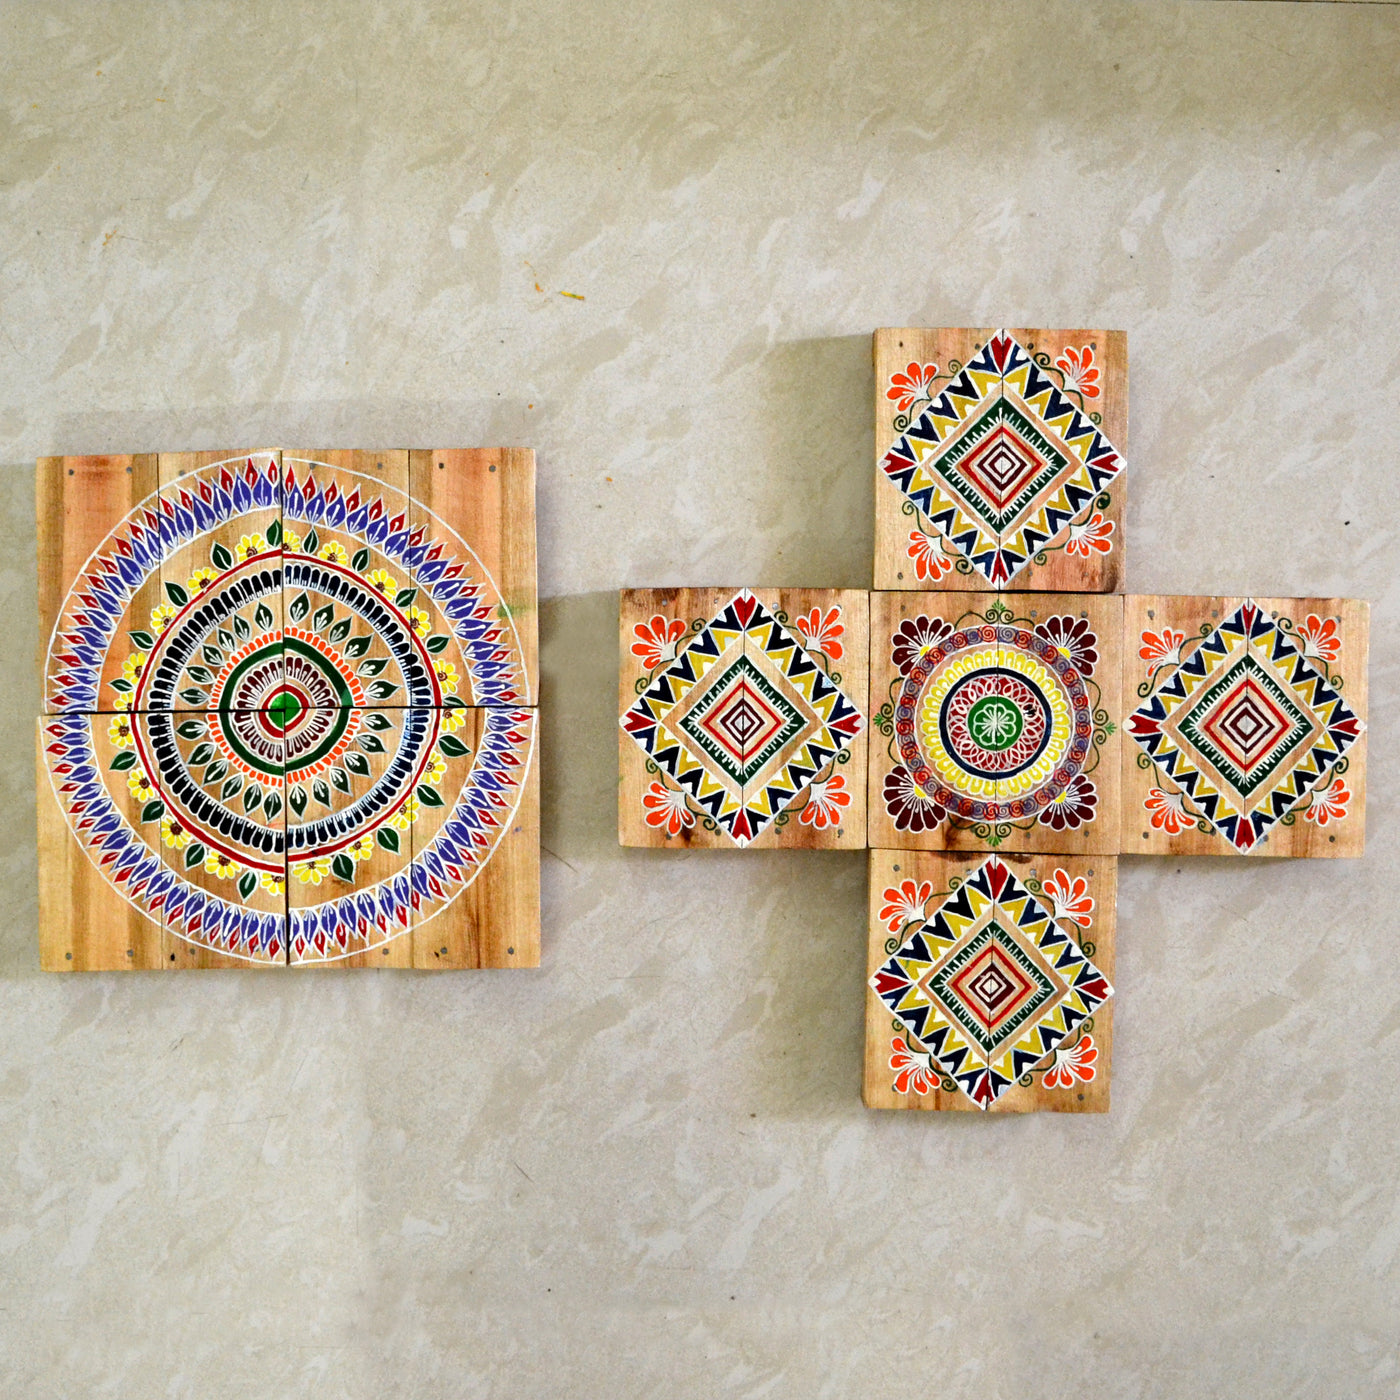 Chinhhari arts wooden hand painted wall decor tiles - WWD002 - Chinhhari Arts store